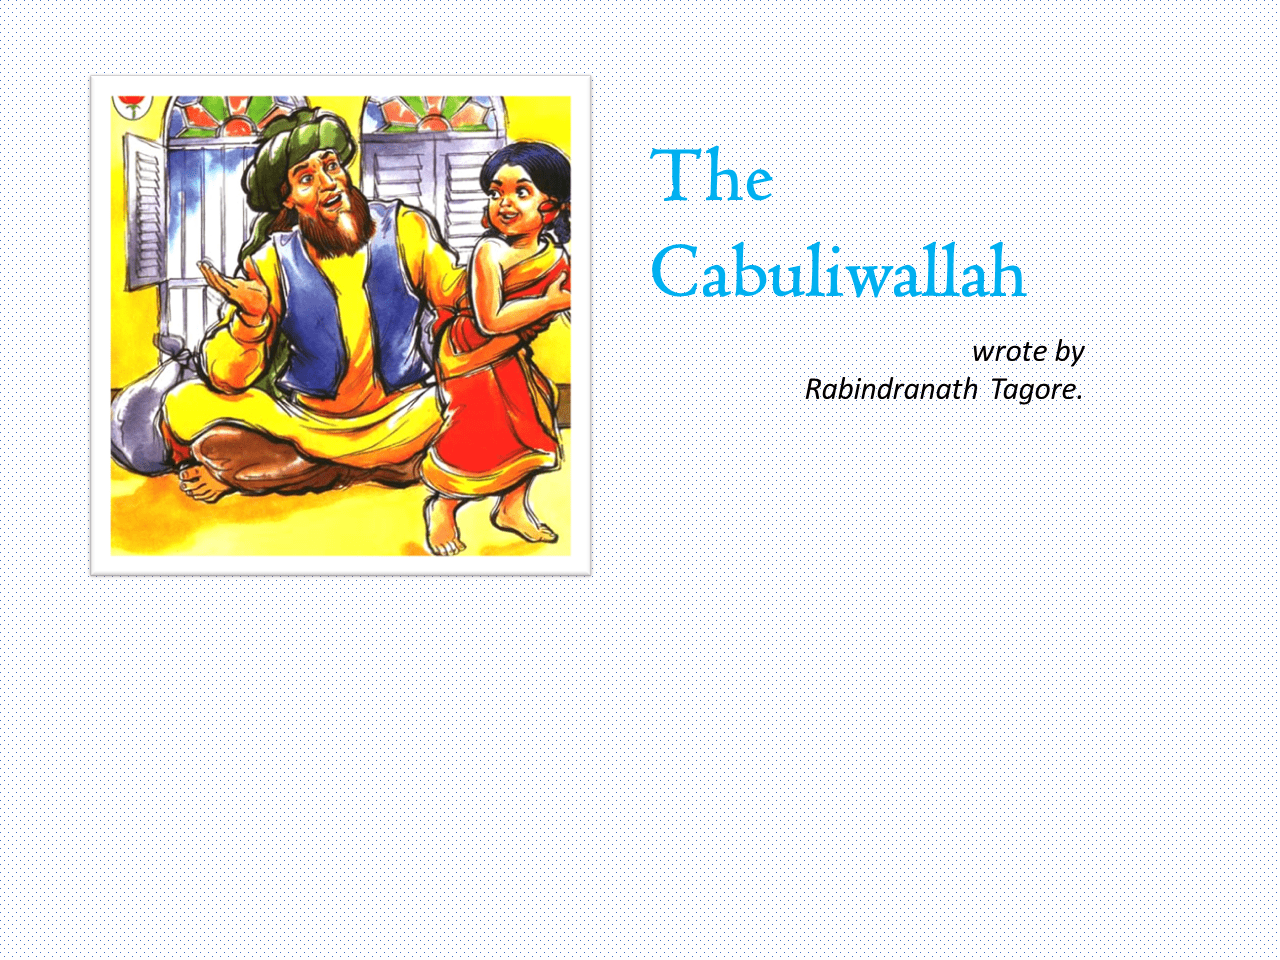 The Cabuliwallah wrote by Rabindranath Tagore Image